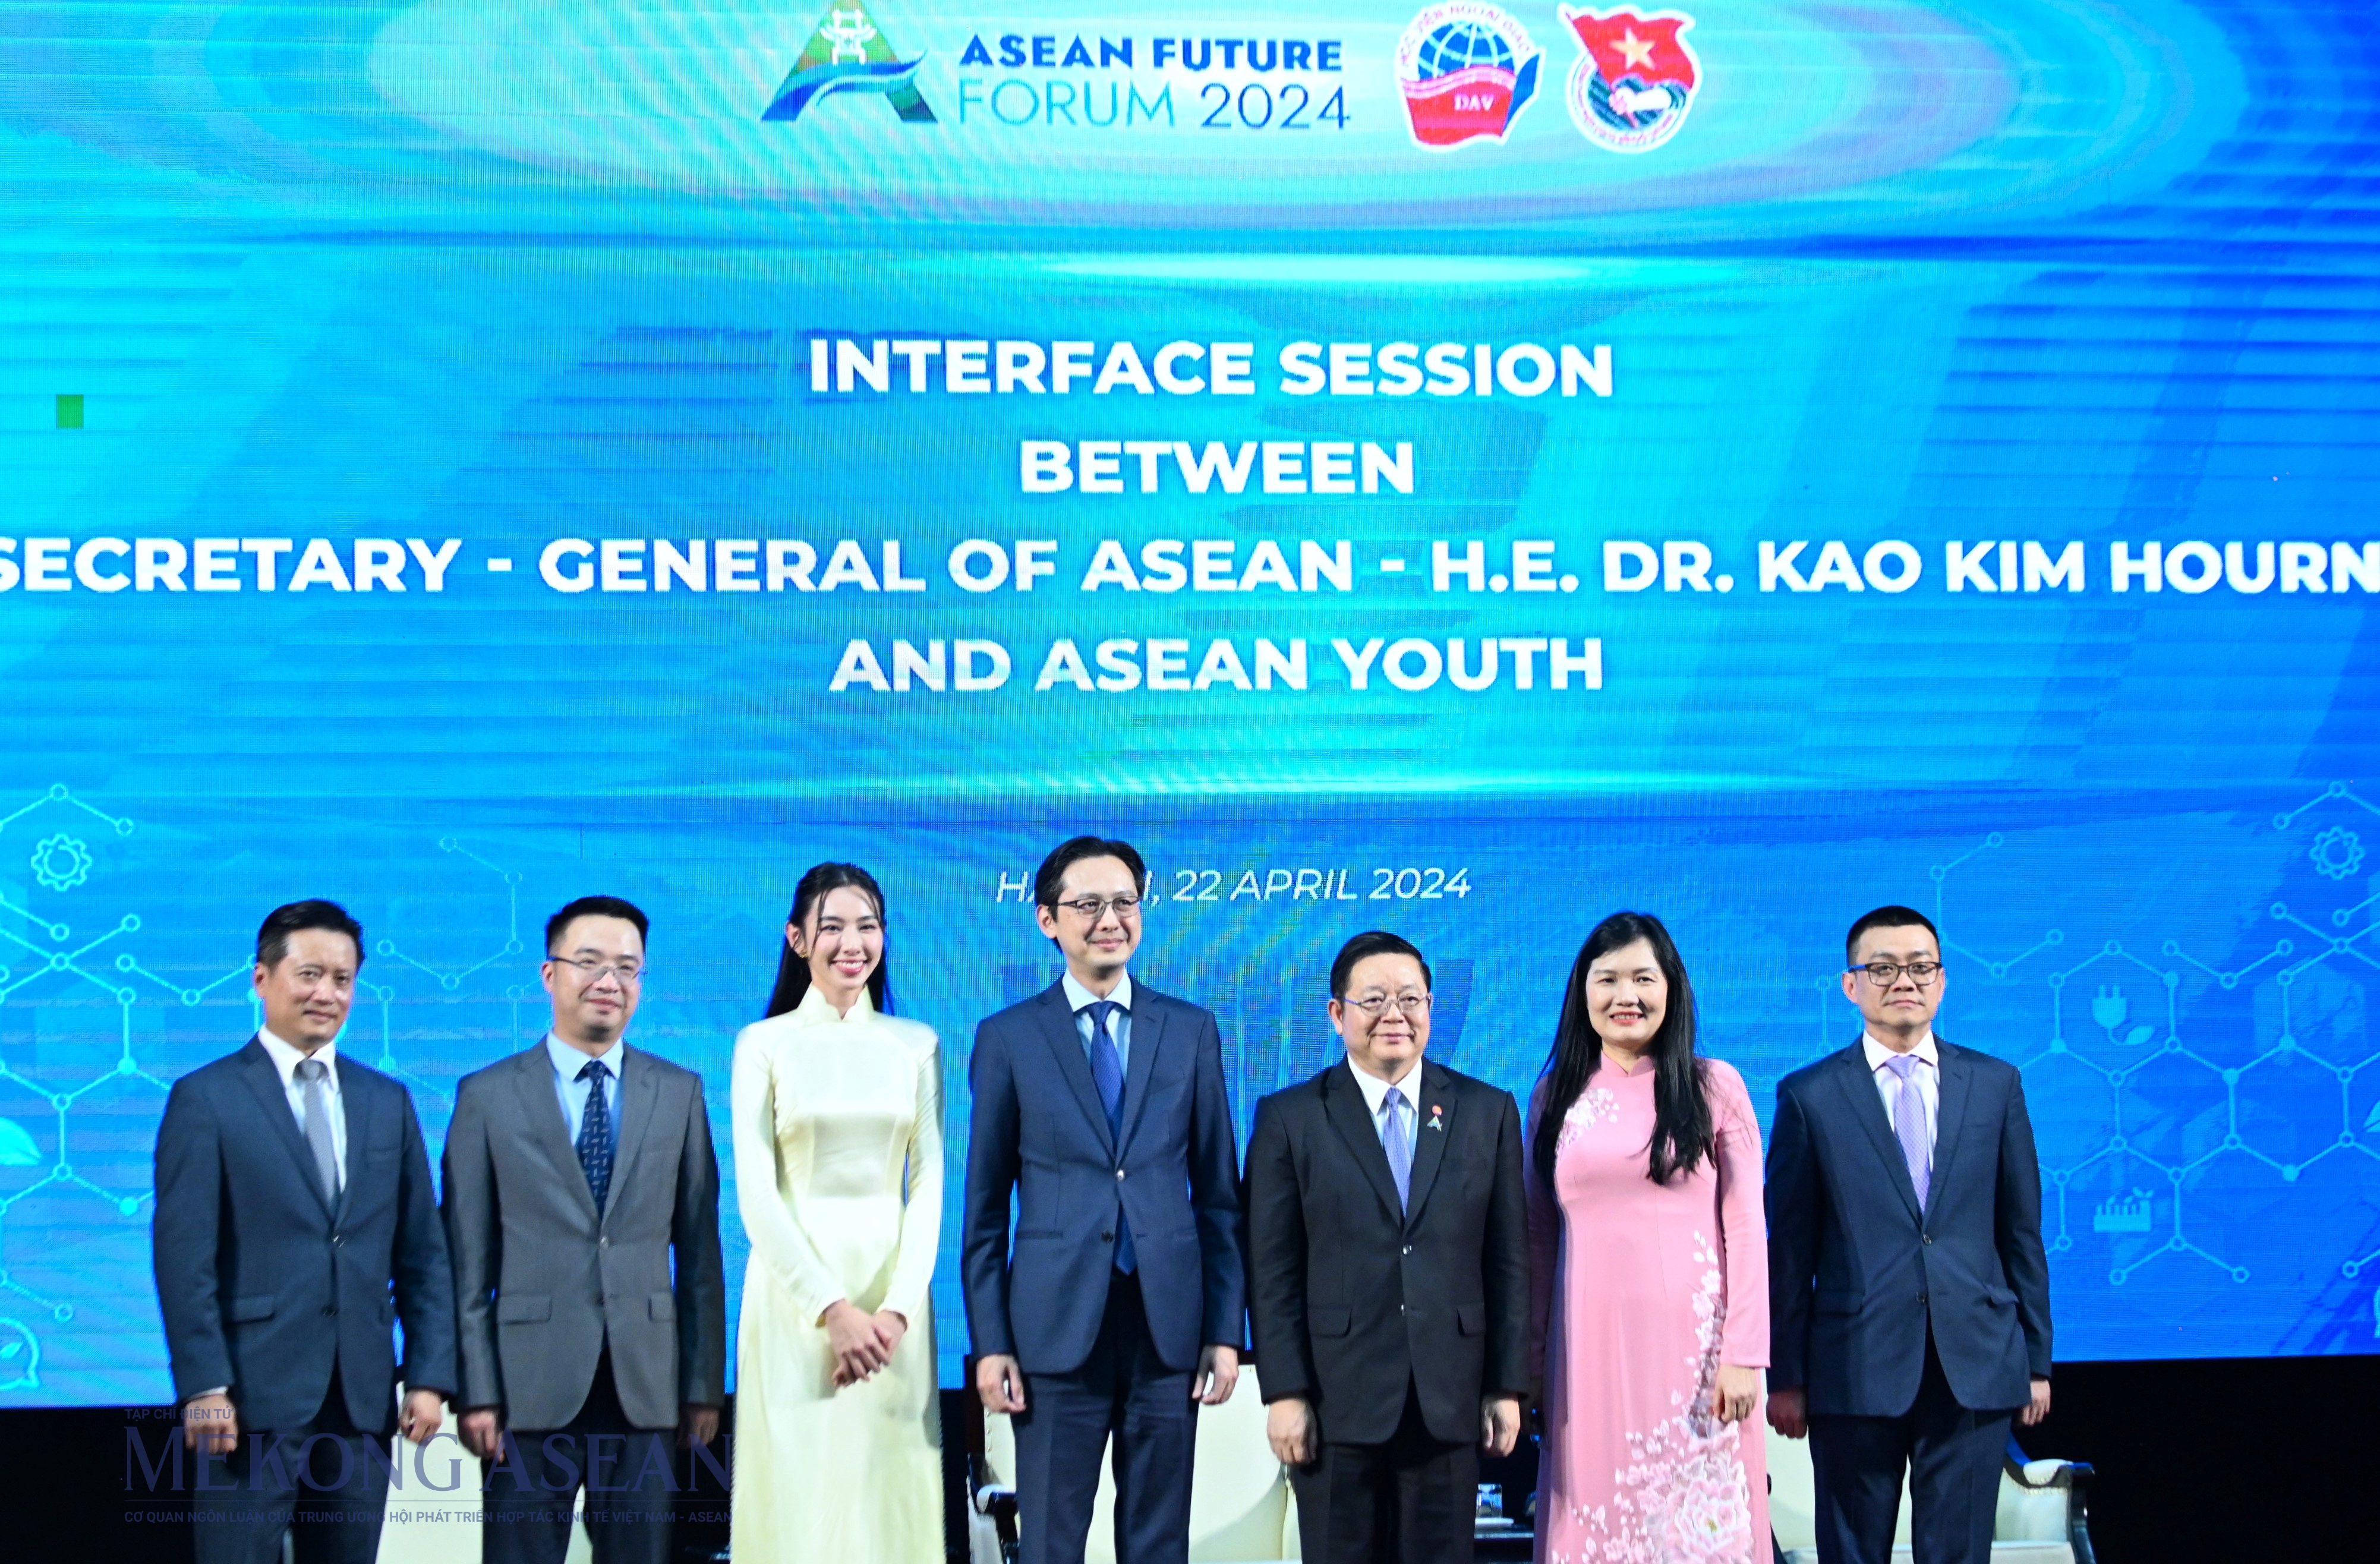 Tổng thư ký Kao Kim Hourn cùng đại diện Bộ Ngoại giao, Trung ương Đoàn TNCS Hồ Chí Minh và thanh niên tại Đối thoại. Ảnh: Đỗ Thảo - Mekong ASEAN